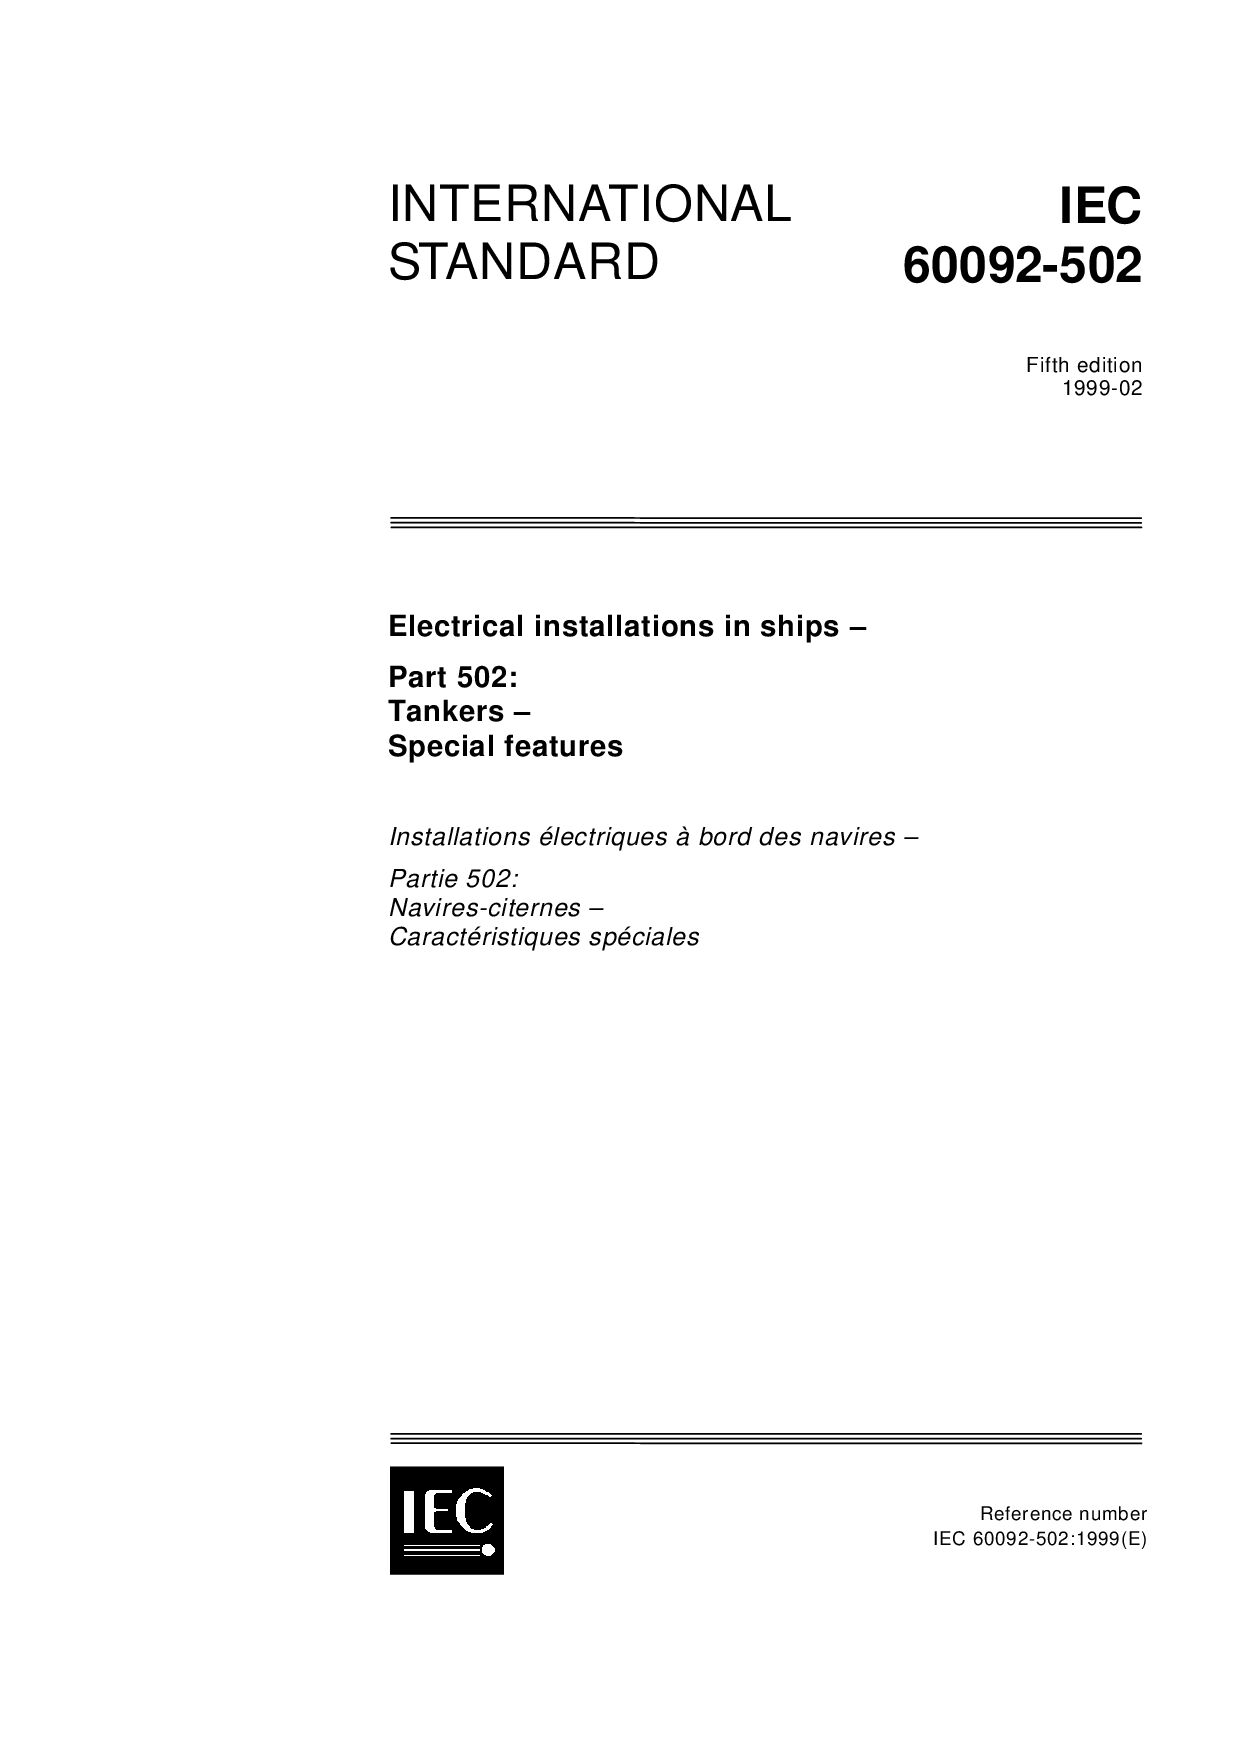 IEC 60092-502:1999